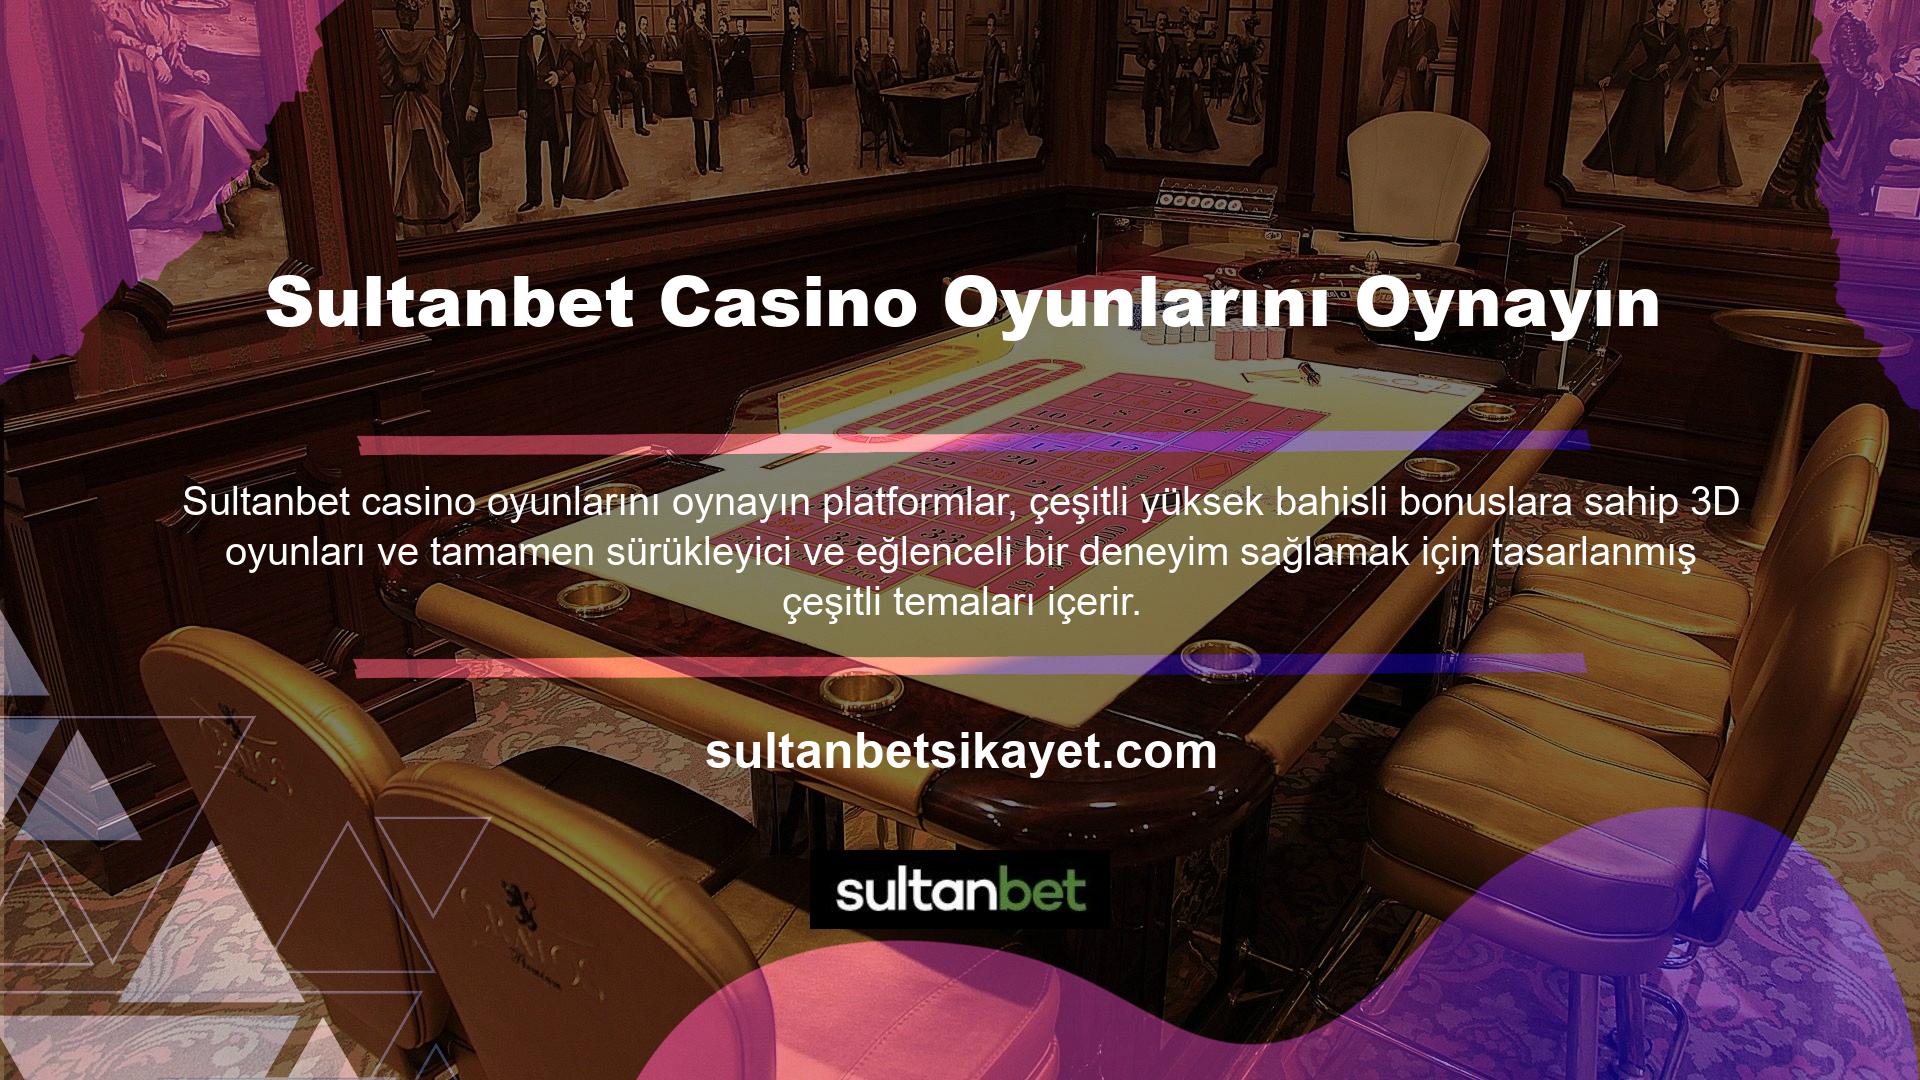 Ayrıca Sultanbet sitesindeki canlı casinoda oynayabileceğiniz birçok masa oyunu seçeneği bulunmaktadır